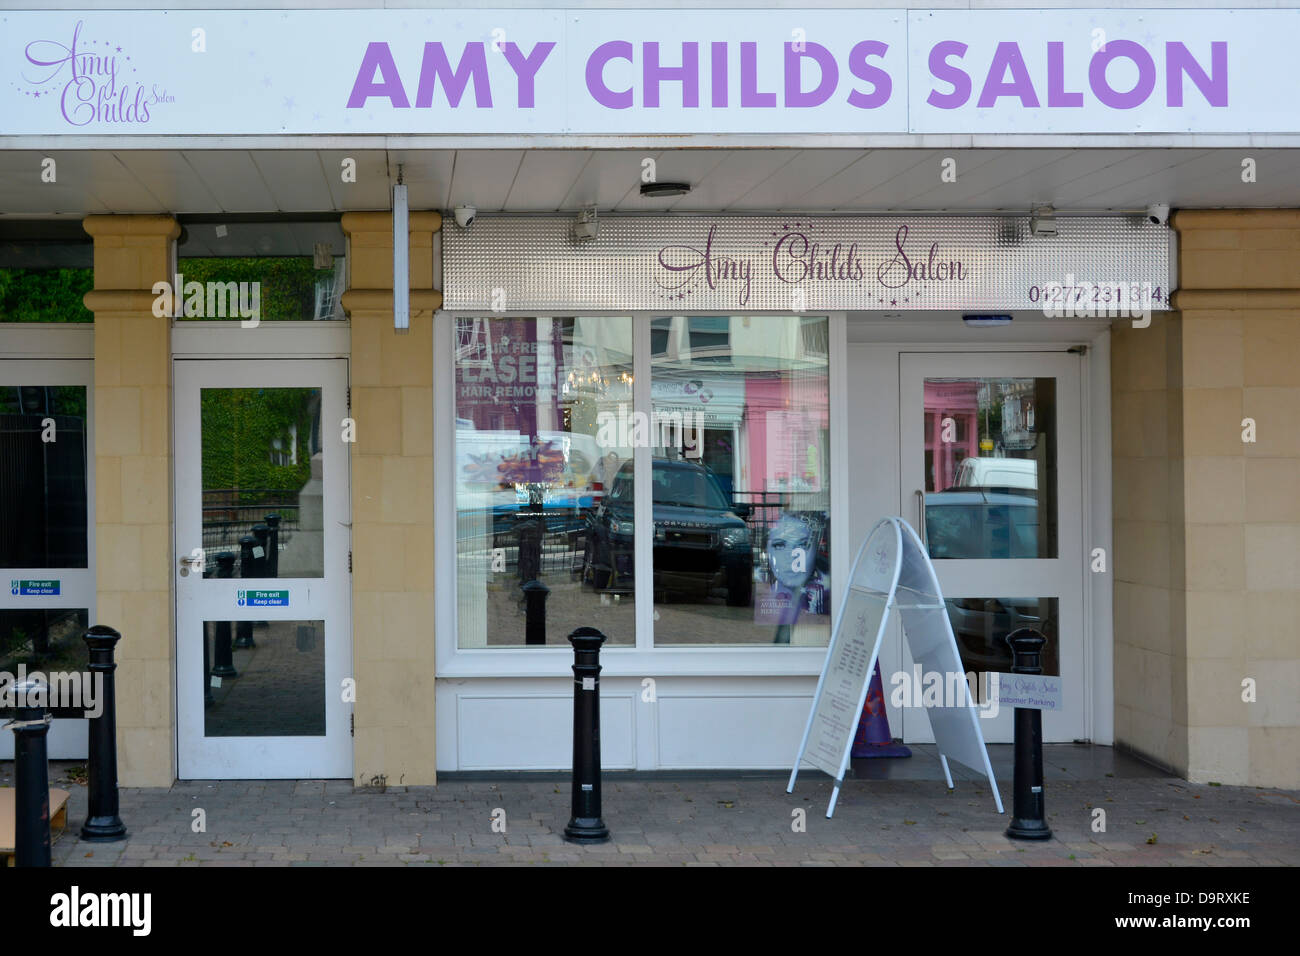 Amy Childs da TV show "l'unico modo è Essex' ha il suo nome su questo salone di parrucchiere in Brentwood, Essex, Inghilterra, Regno Unito Foto Stock